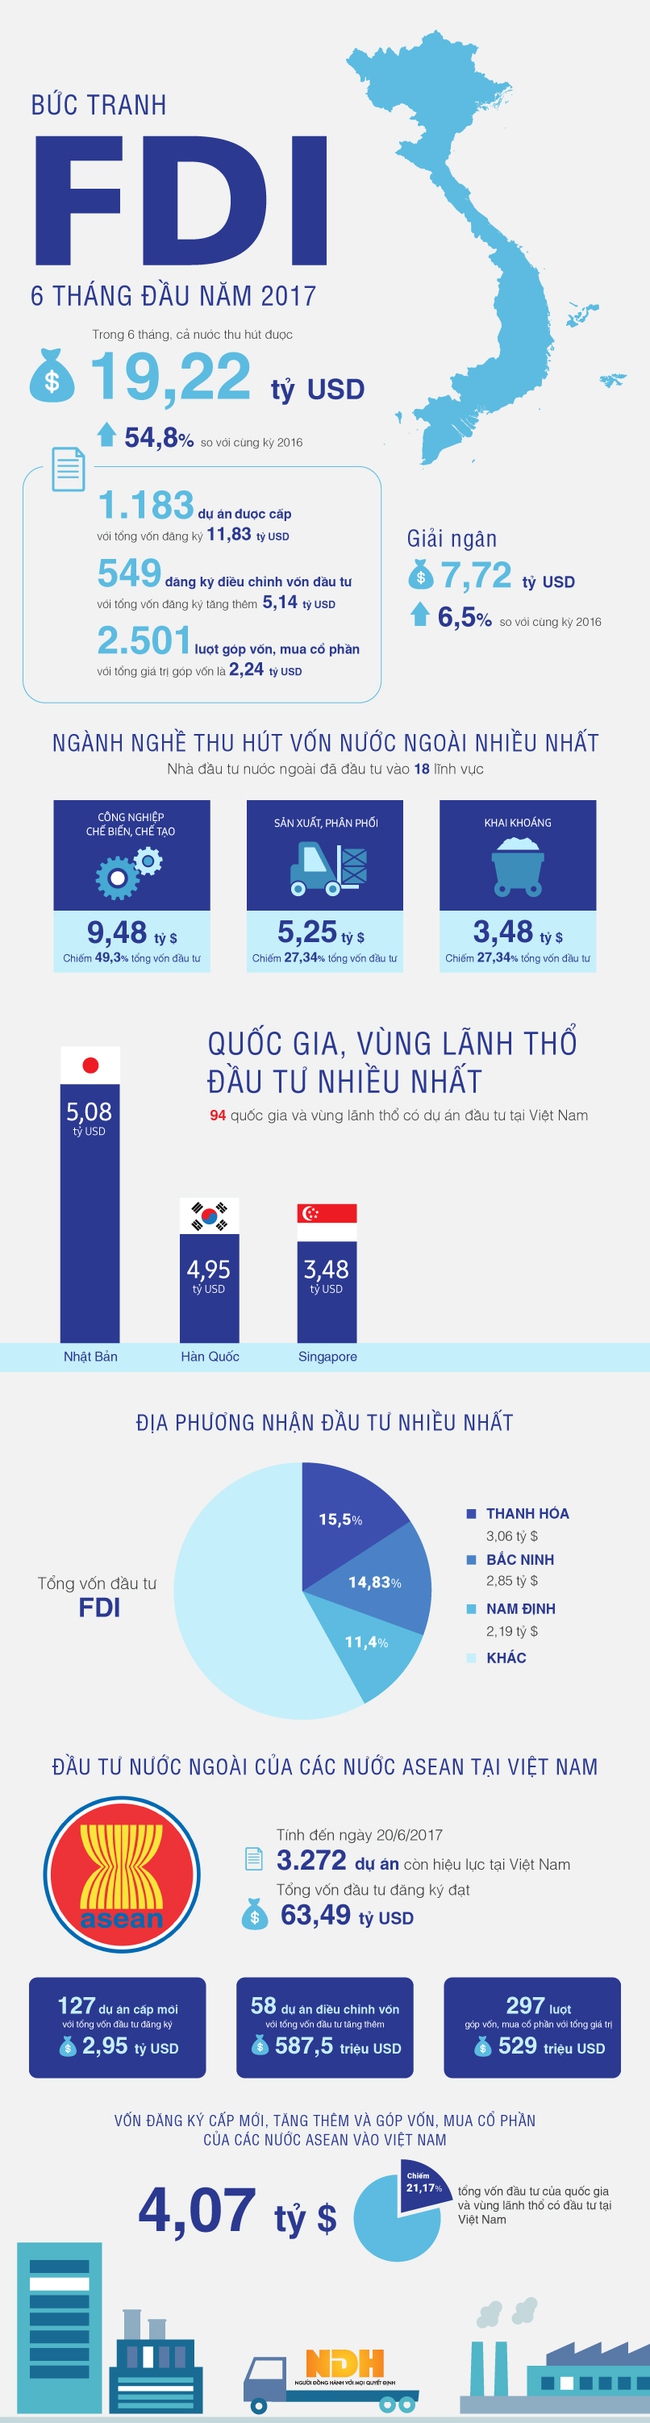 [Infographic] Bức tranh FDI 6 tháng tại Việt Nam: Dấu ấn Nhật Bản